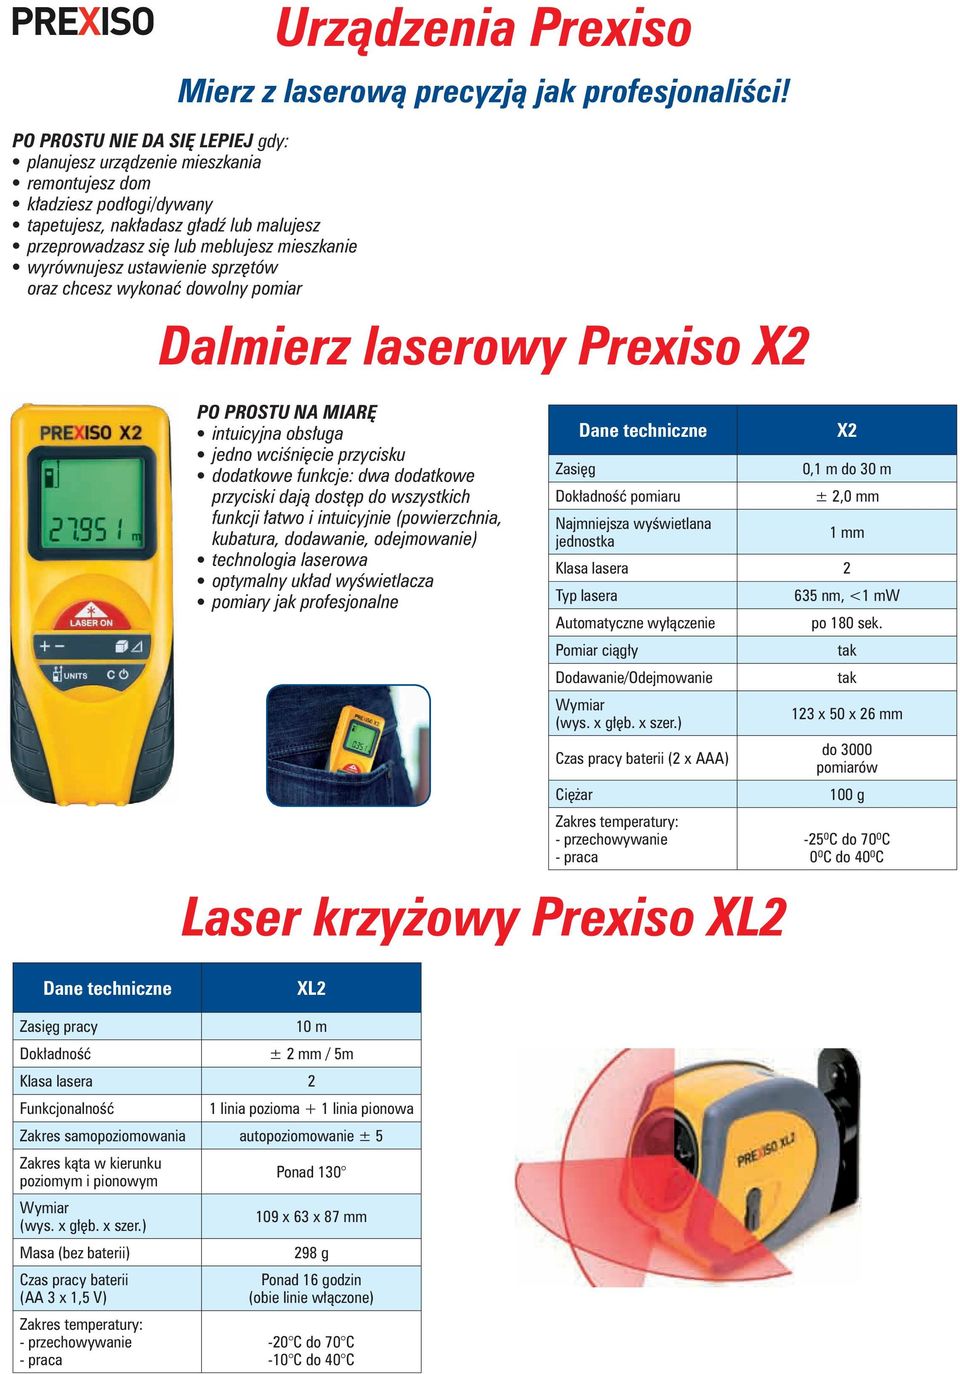 mieszkanie l wyrównujesz ustawienie sprzętów oraz chcesz wykonać dowolny pomiar Dalmierz laserowy Prexiso X2 PO PROSTU NA MIARĘ l intuicyjna obsługa l jedno wciśnięcie przycisku l dodatkowe funkcje: